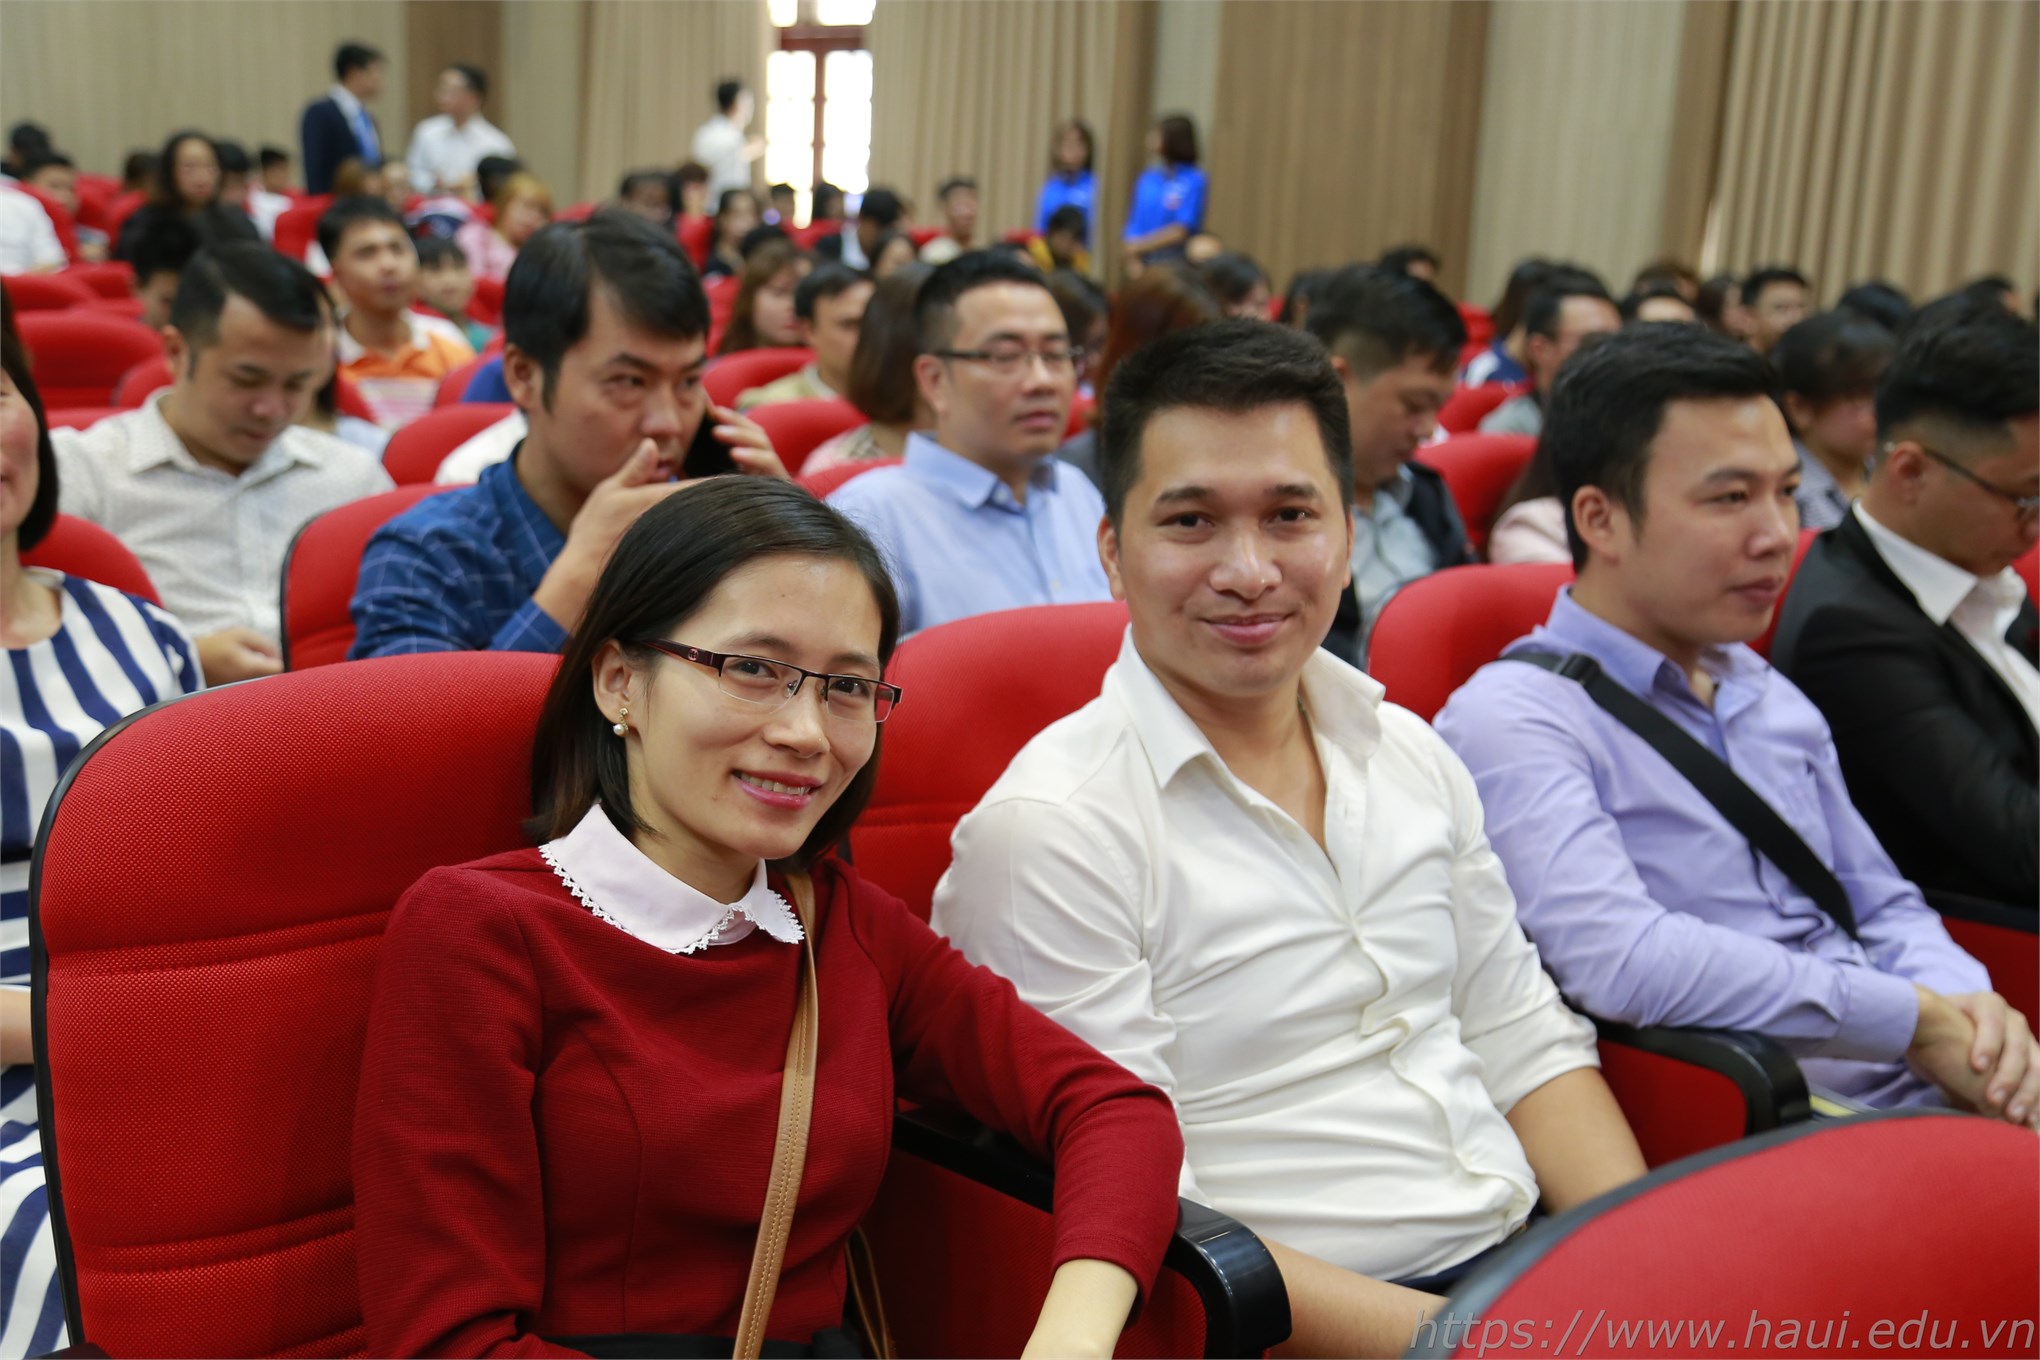 Gặp mặt các thế hệ học sinh, sinh viên Đại học Công nghiệp Hà Nội 2019